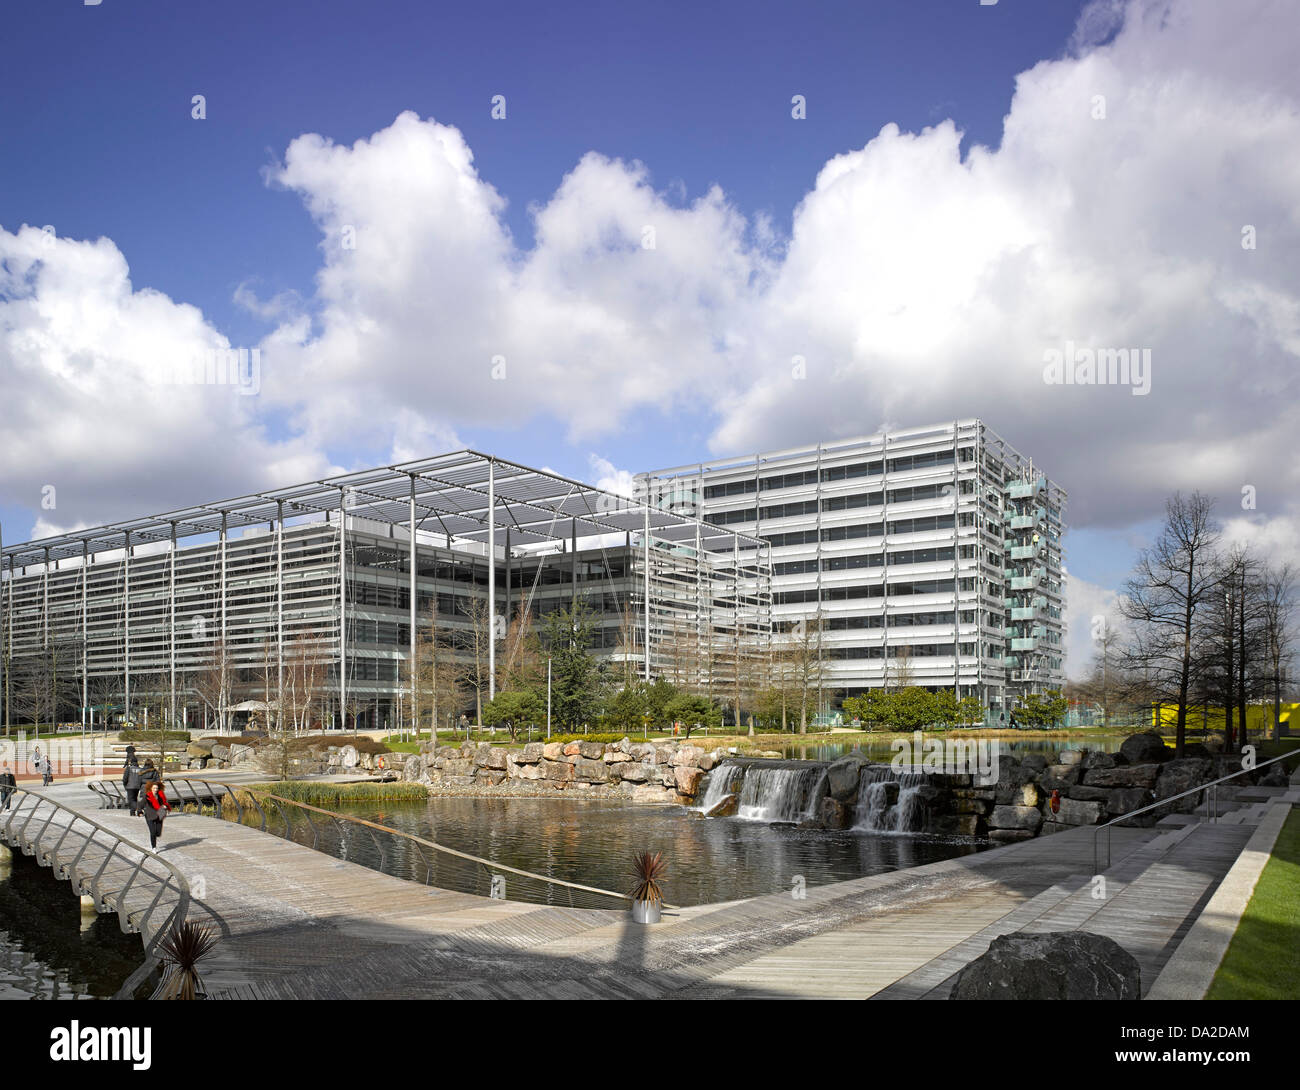 Chiswick Park, London, Vereinigtes Königreich. Architekt: Rogers Stirk Harbour + Partner, 2013. Gesamtüberblick in Chiswick Geschäft p Stockfoto